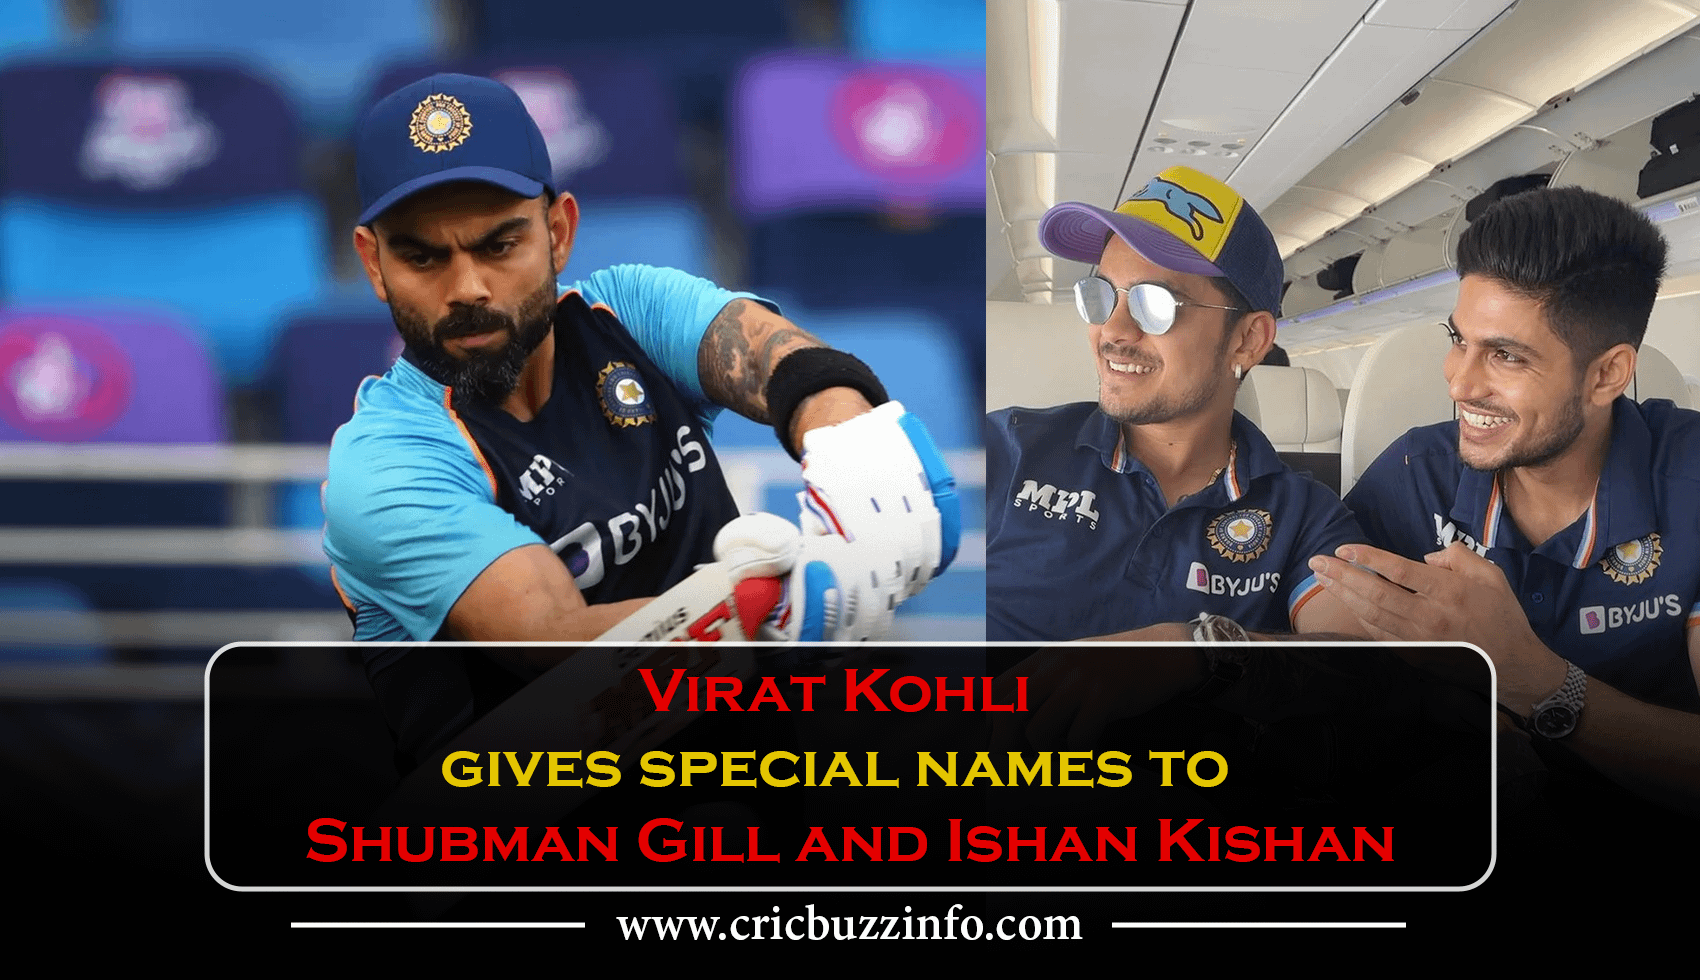 Virat Kohli gives special names to Shubman Gill and Ishan Kishan